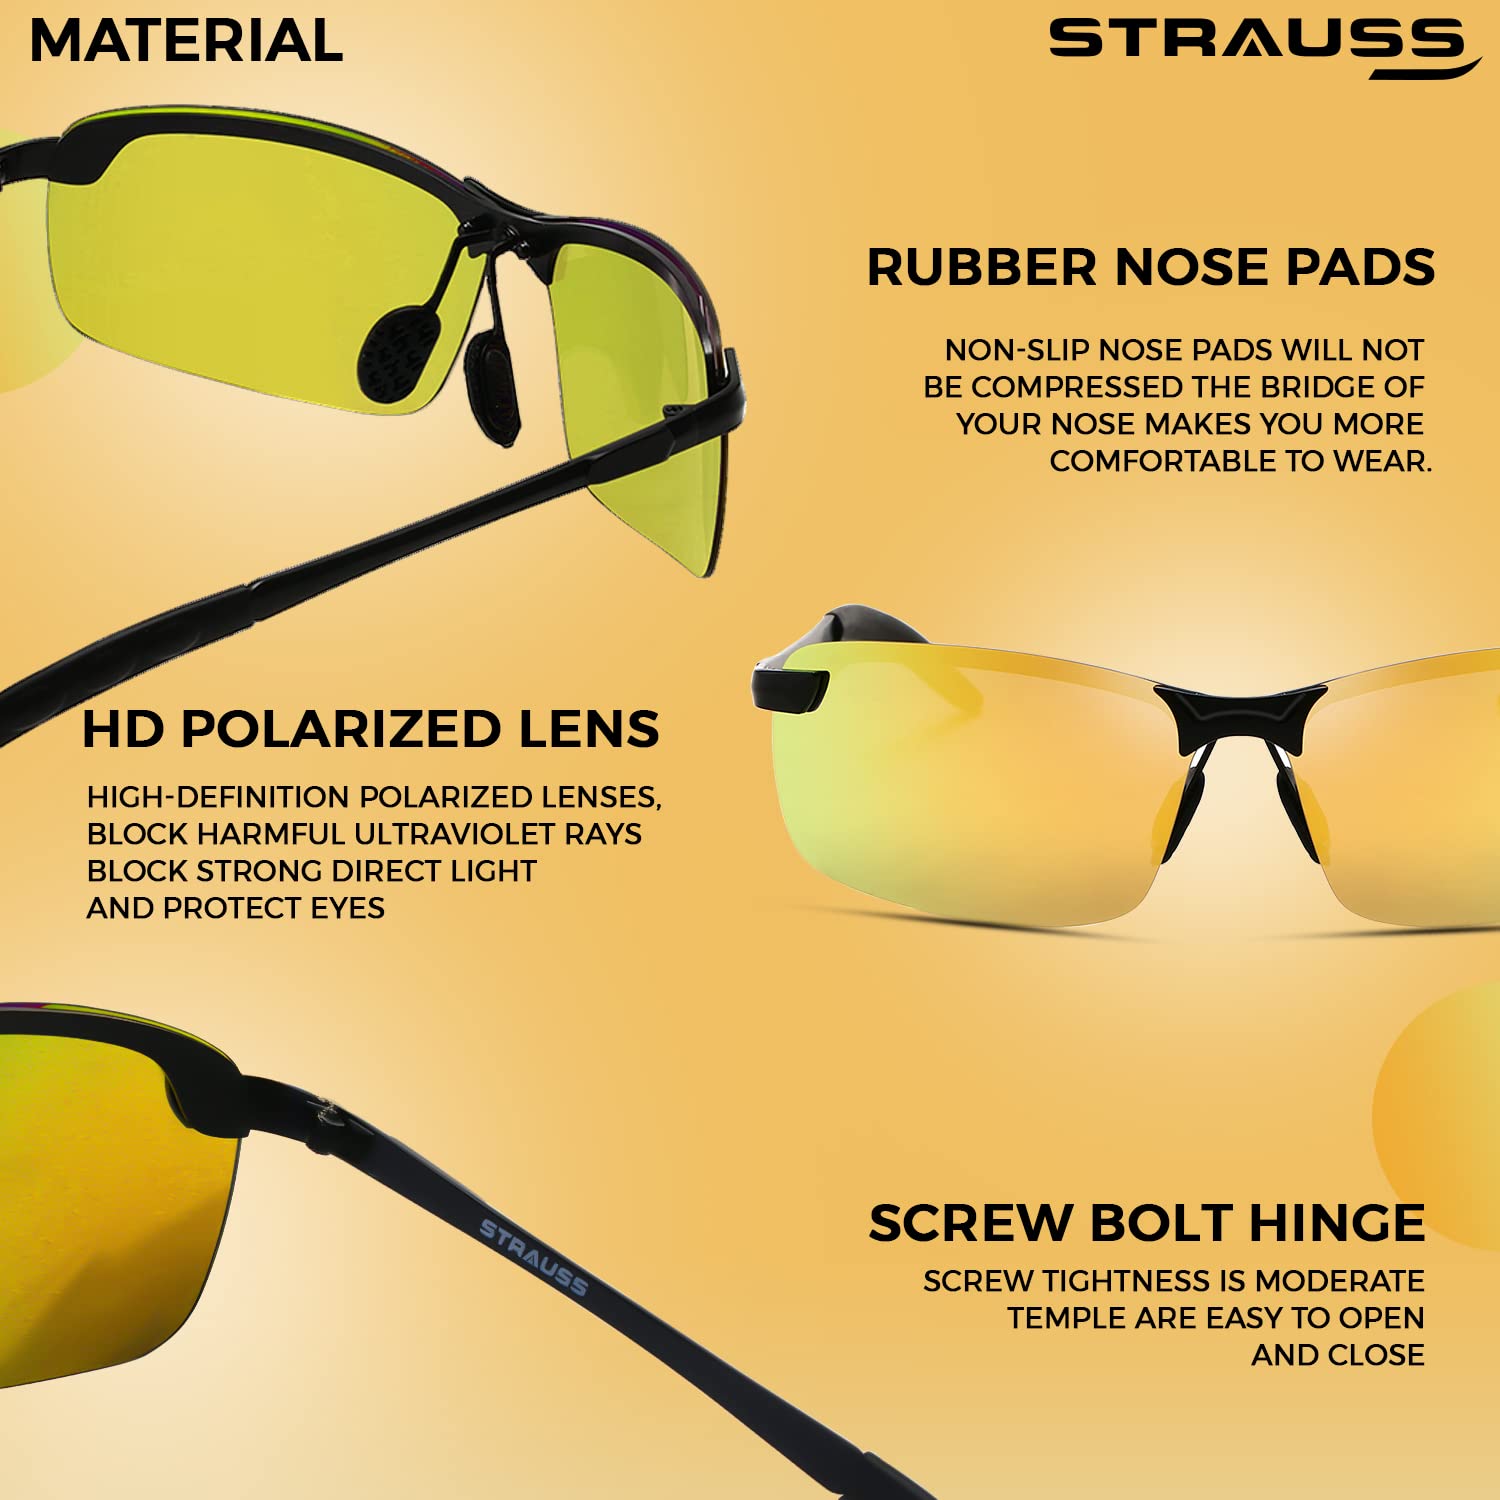 STRAUSS UV 400 Sunglasses, (Yellow)